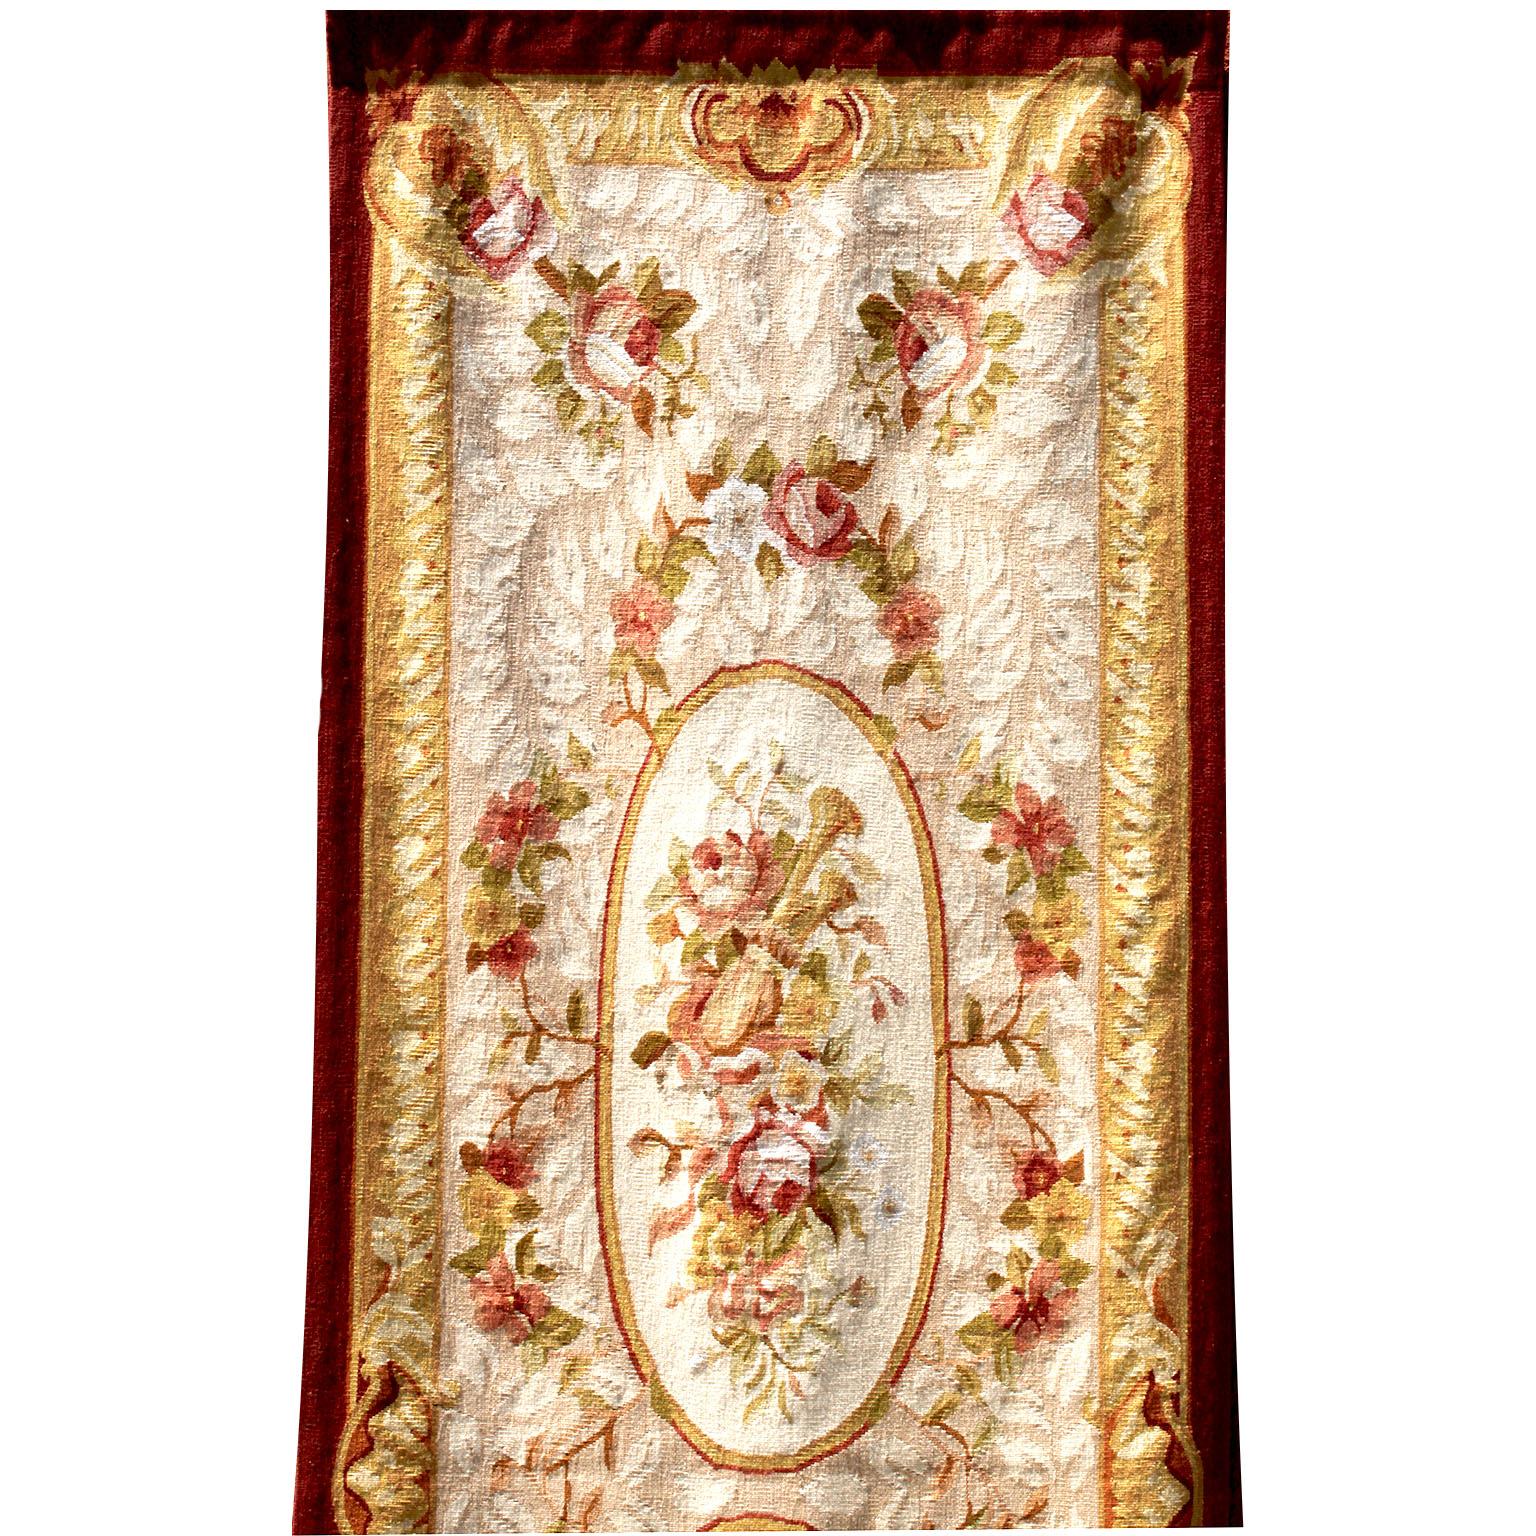 Ein schönes französisches Wandteppich-Paneel im Stil Louis XV aus dem 19. Längliches Gobelinfragment mit einem floralen Muster aus Rosenbouquets und -strängen, zwei ovalen Bahnen mit Blumenbouquets in der Mitte und einer Akanthus- und Blumenbordüre.